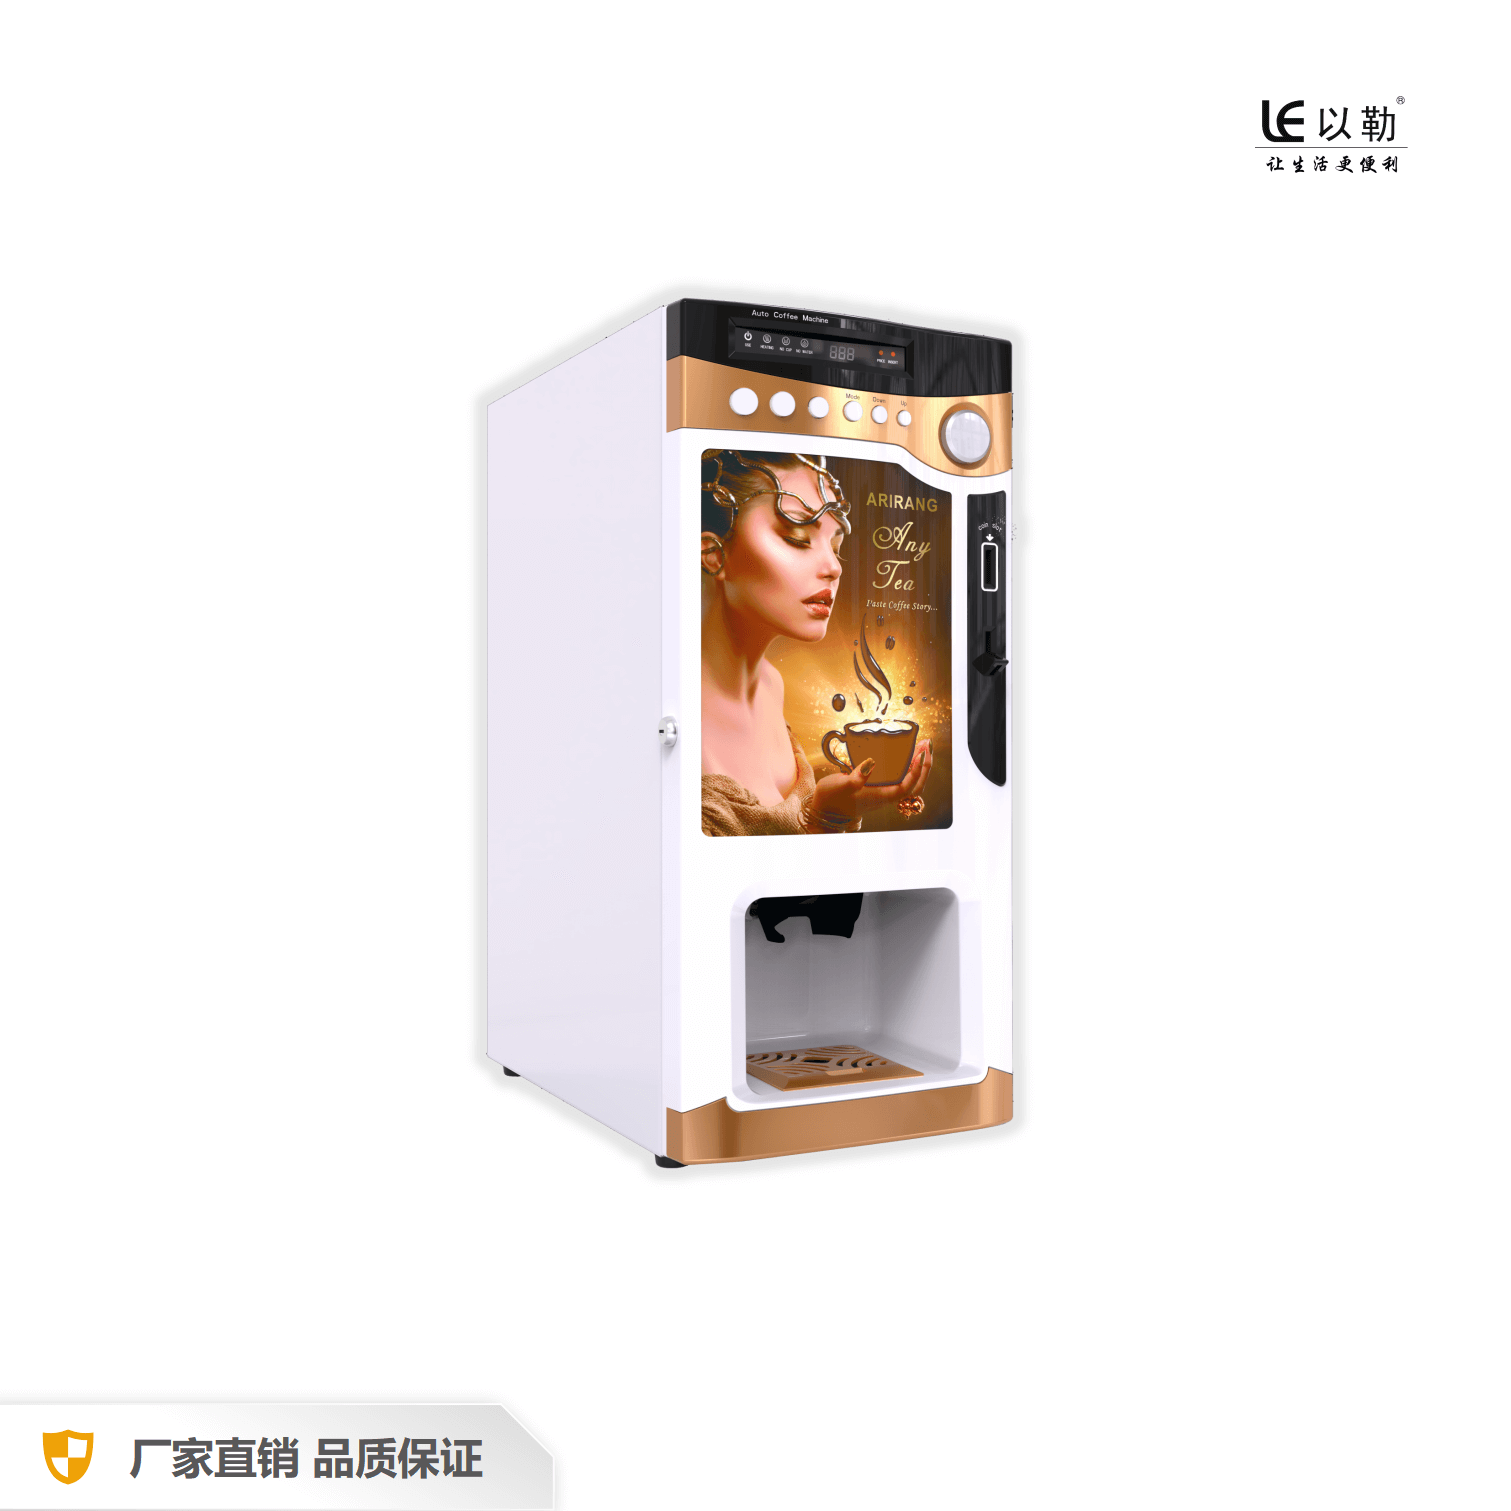 Pequeña máquina expendedora de café instantáneo con dispensador de tazas